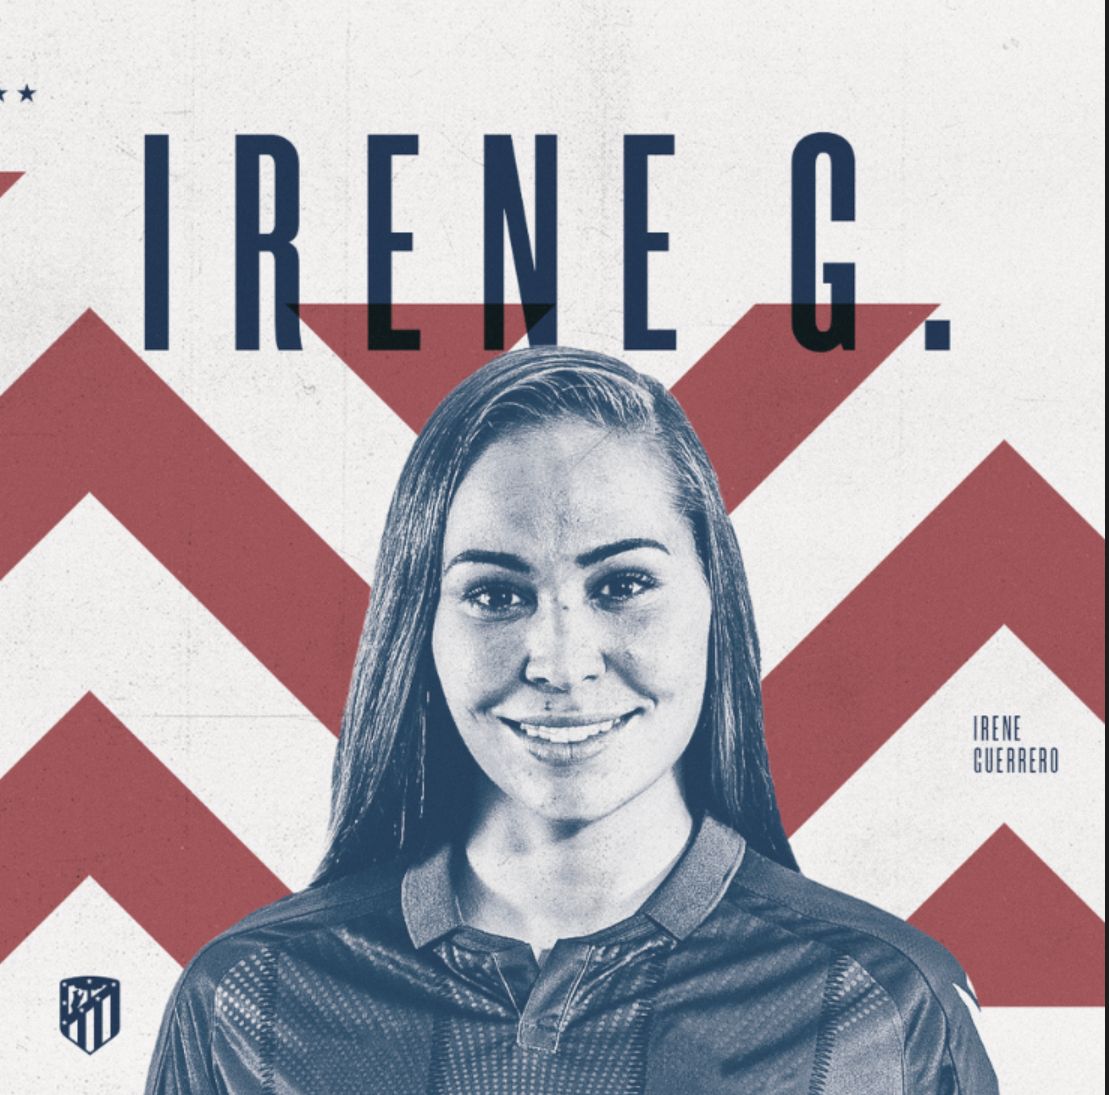 
Irene
Guerrero, primer fichaje para el Atlético de Madrid Femenino
2022/2023